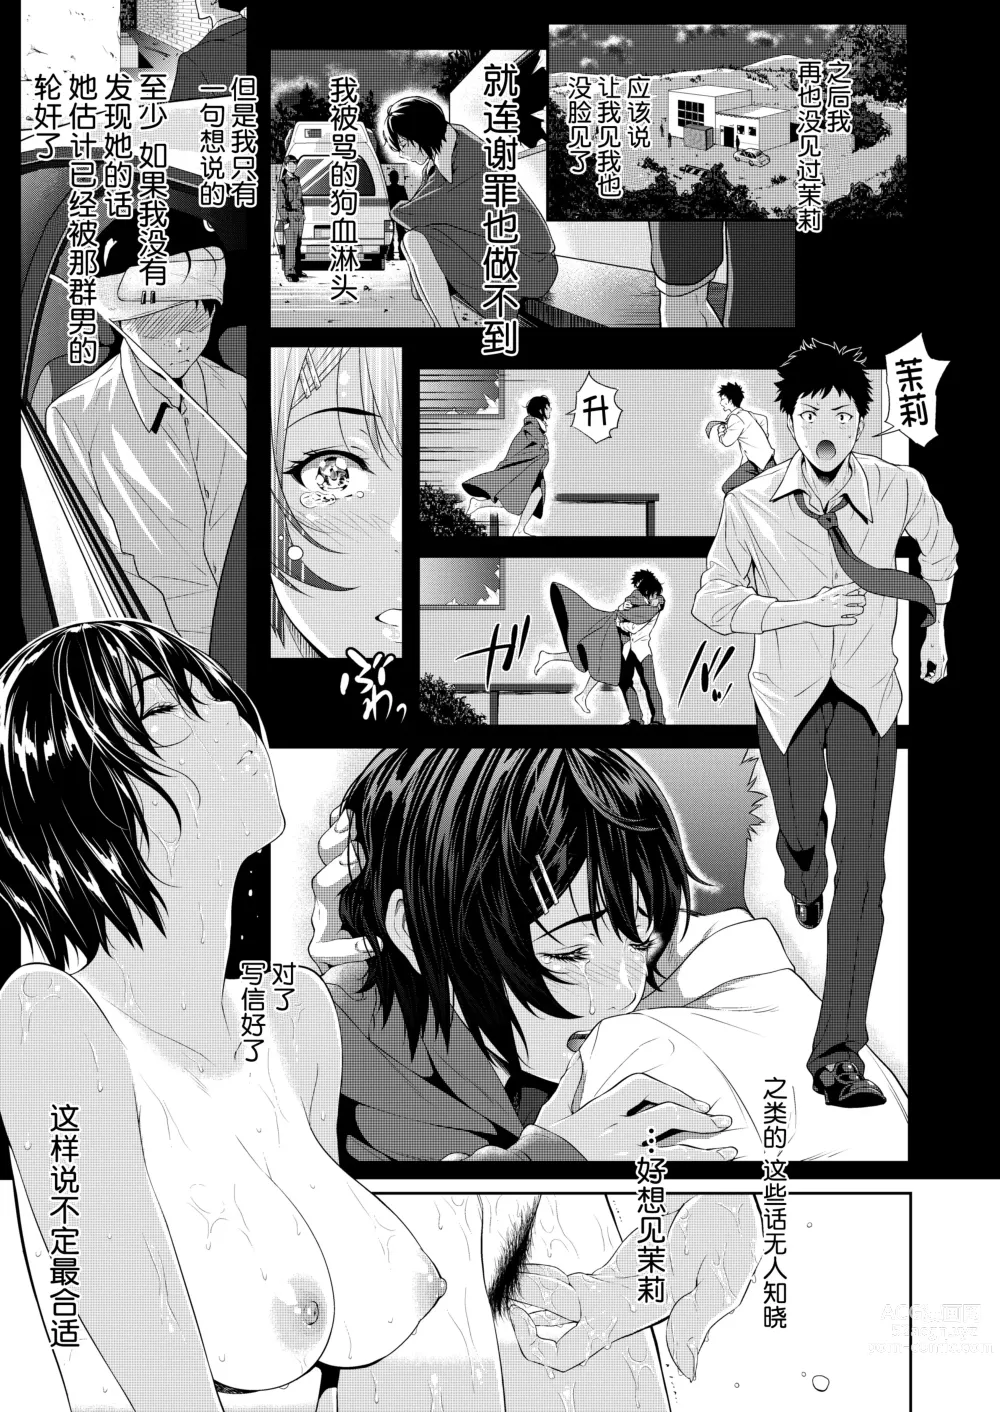 Page 35 of manga 僕たちのゴールライン